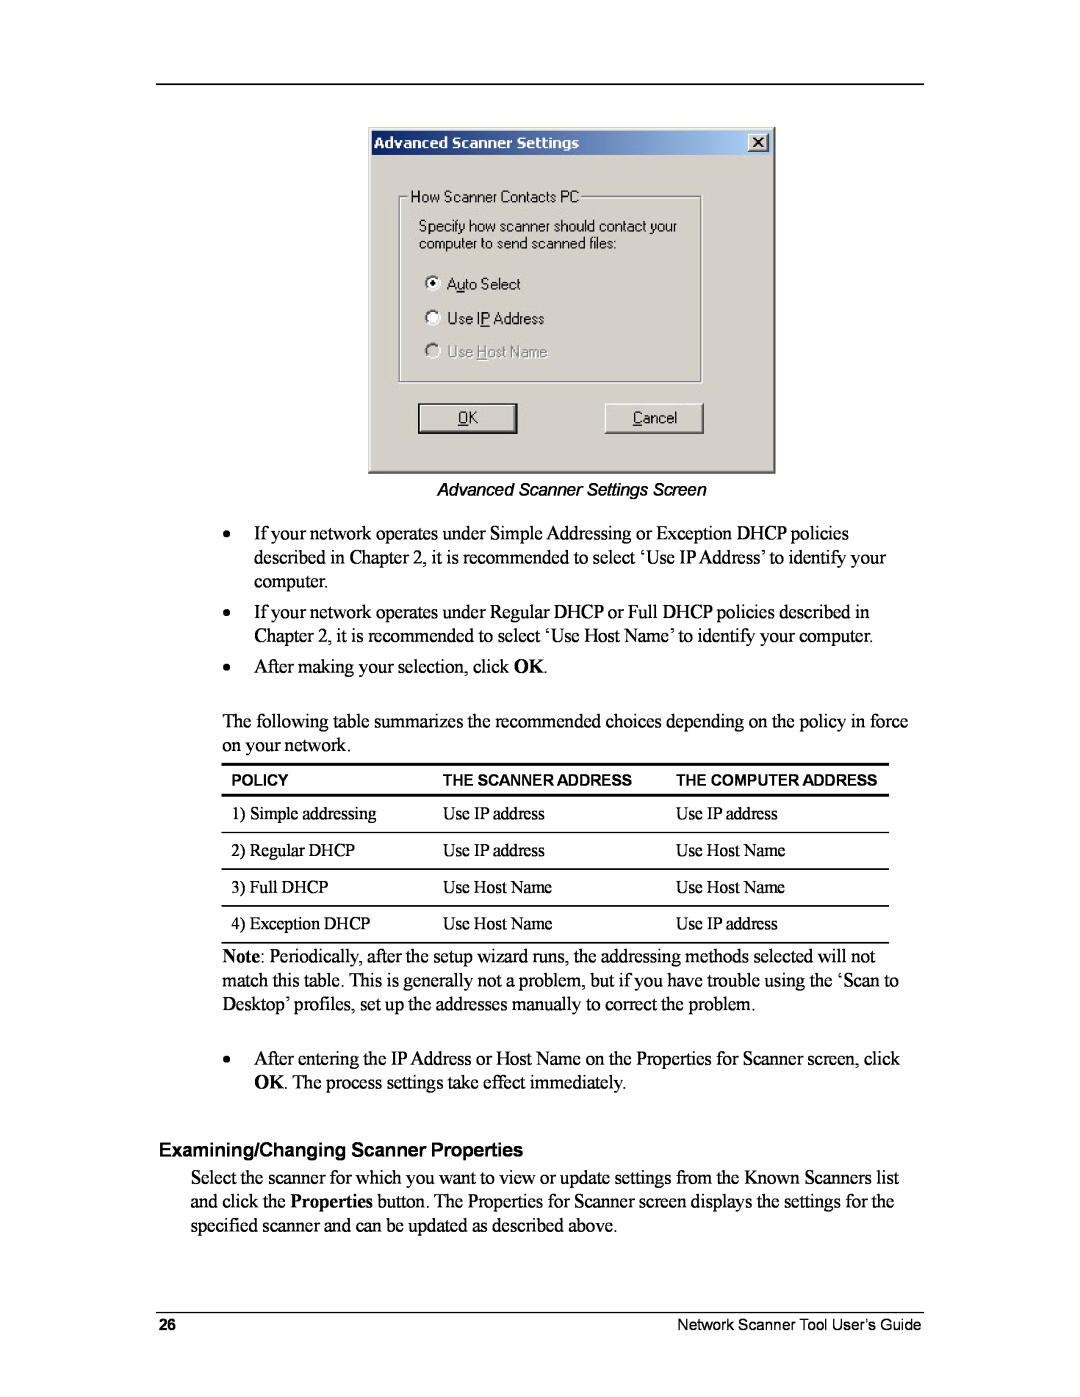 Sharp R3.1 manual Examining/Changing Scanner Properties 